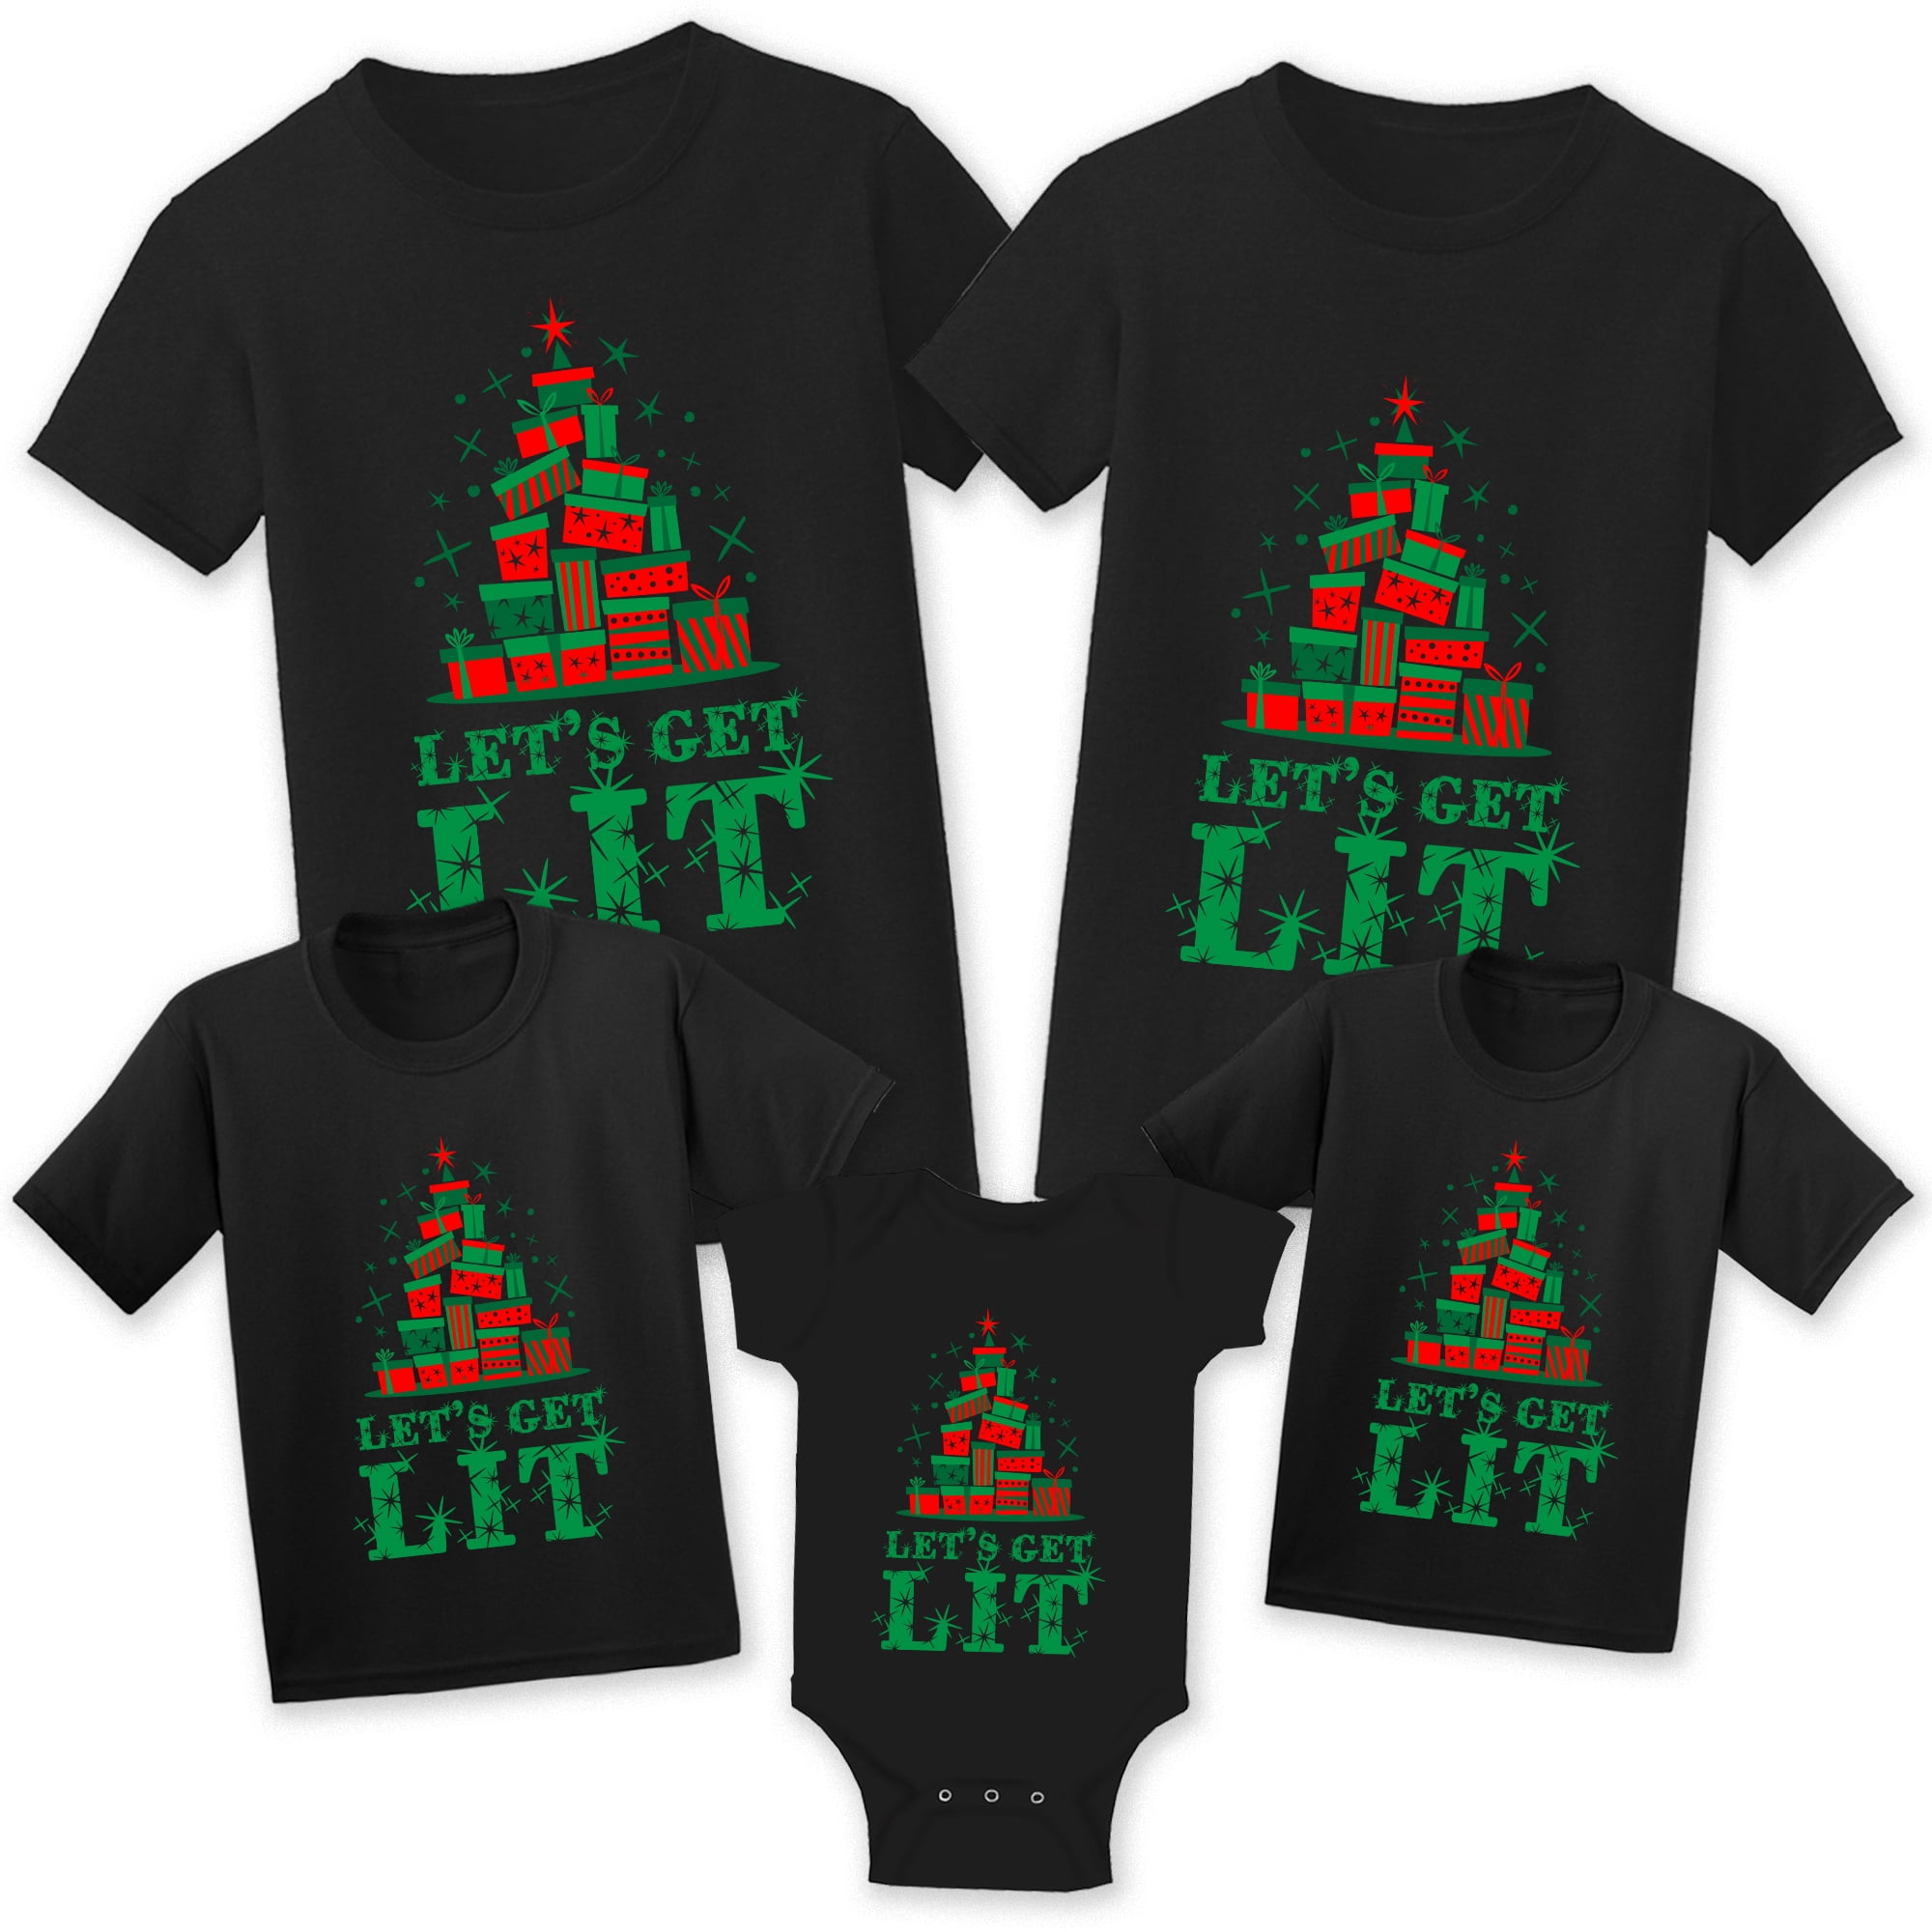 Shirts For Christmas Christmas Shirts for Family,Christmas Tee Santa Shirt Hot Coco Shirt Coco Christmas Jumpers T-shirt,Christmas Shirt